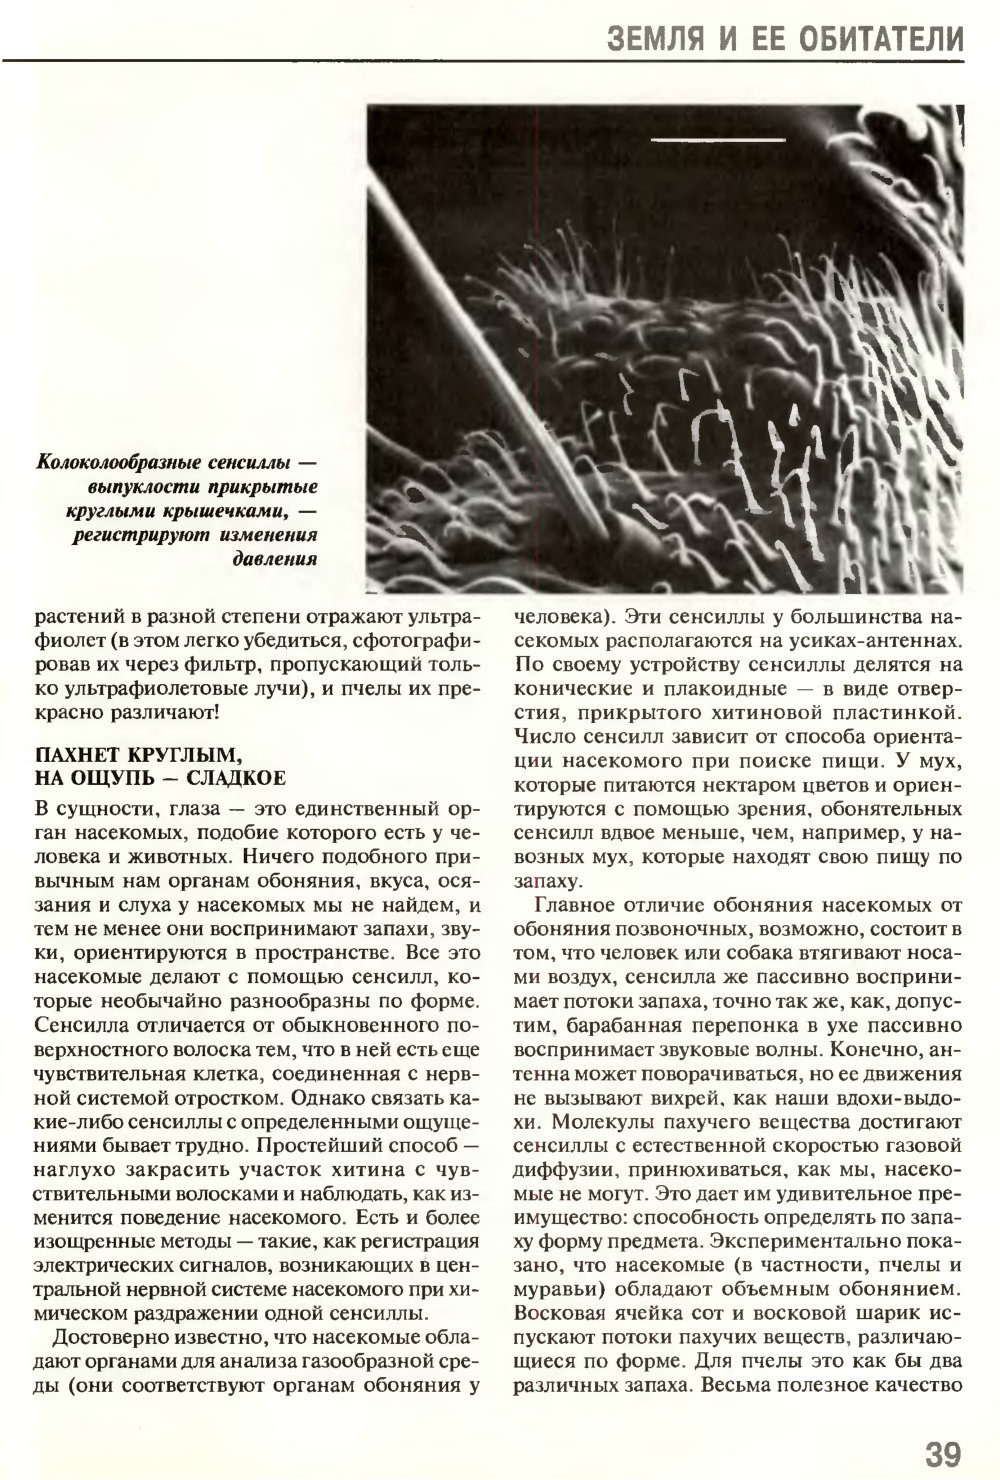 Взгляд на мир шестиугольными глазами. В.Г. Митрофанов. Химия и жизнь, 1995, №5, с.36-41. Фотокопия №4